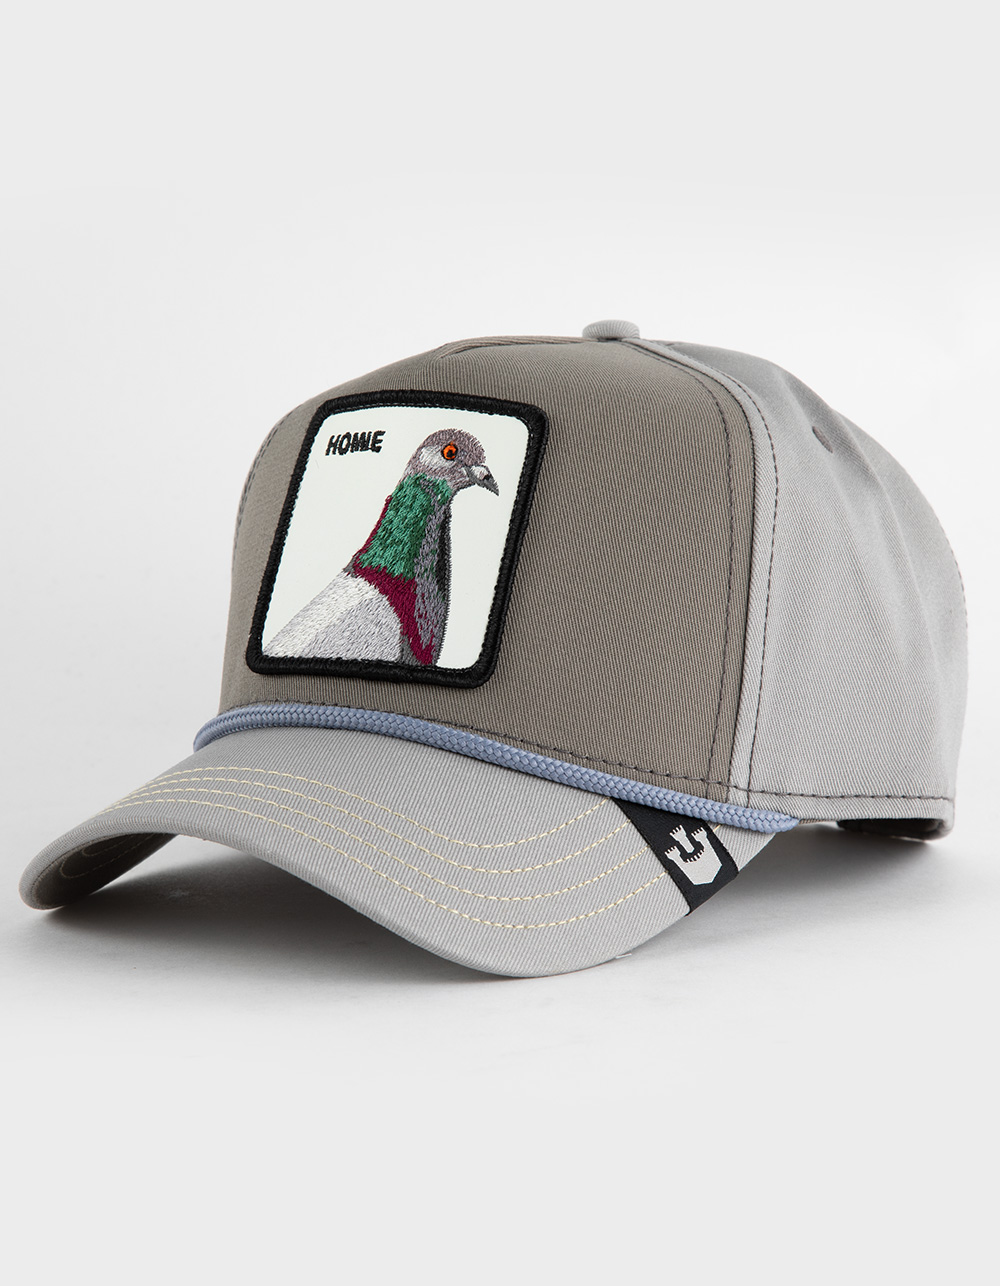 GOORIN BROS. Homie Pigeon Snapback Hat